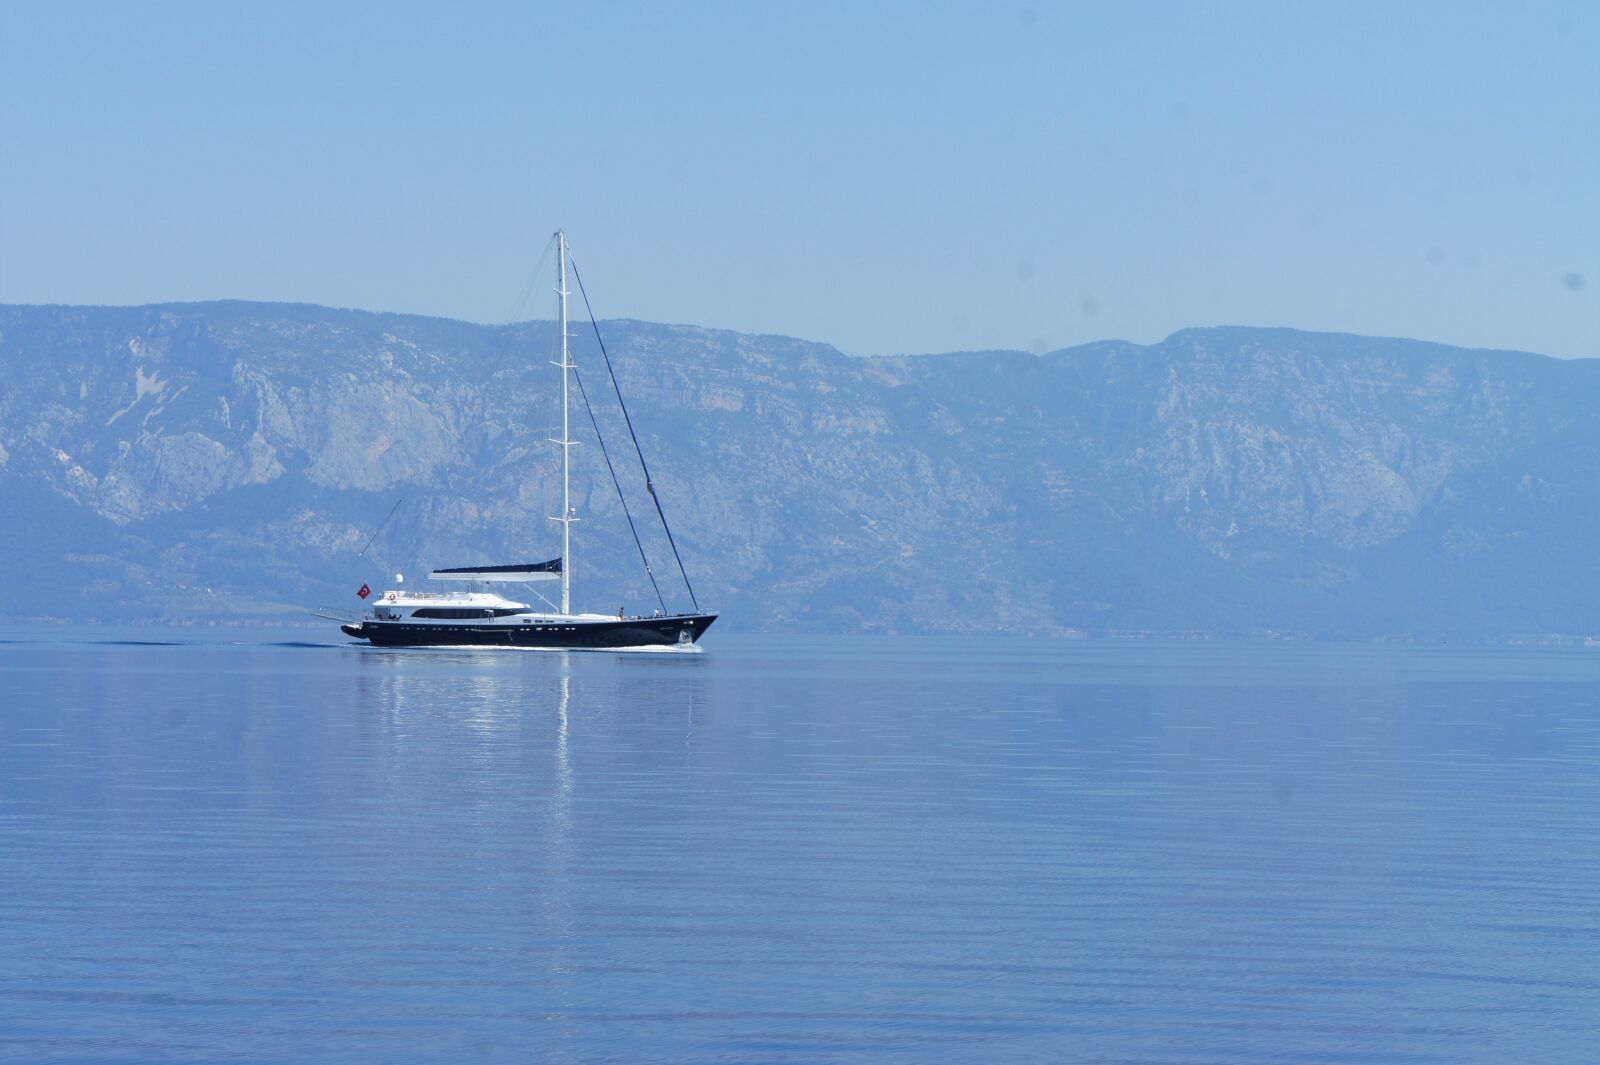 Sony Alpha NEX-5 sample photo. Yacht, sea, boat photography